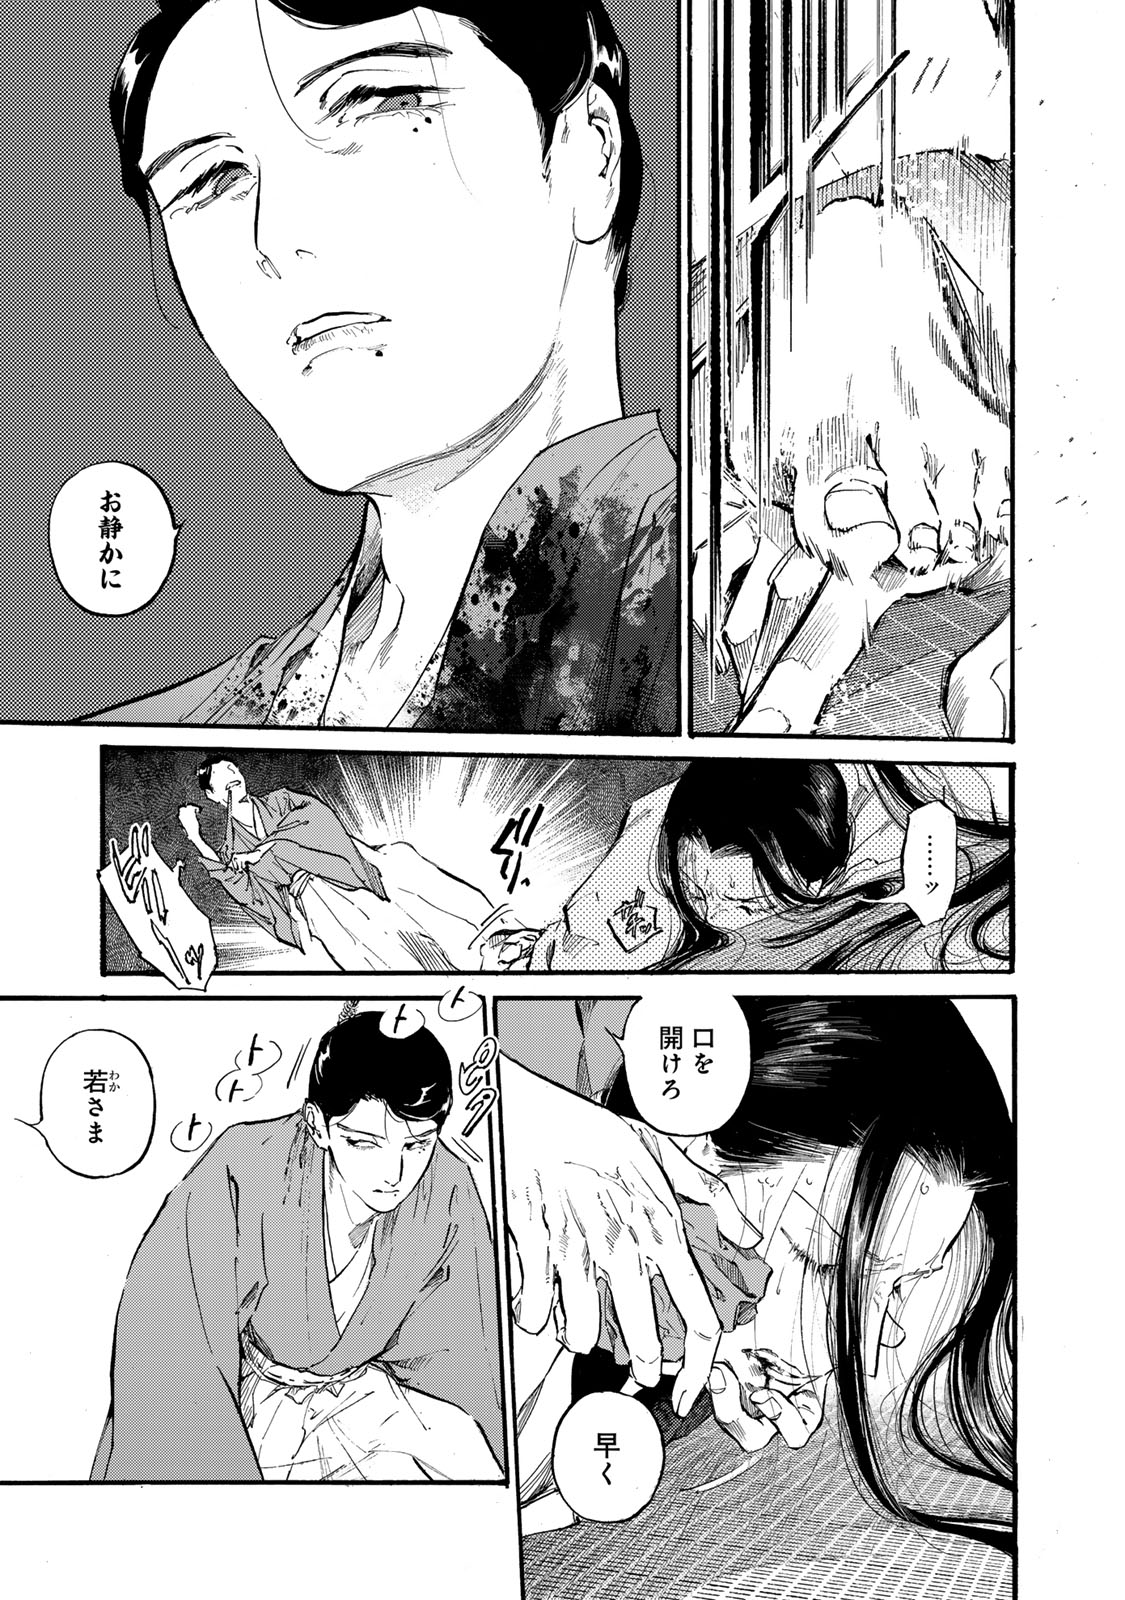 Karasu wa Aruji wo Erabanai - Chapter 40 - Page 13